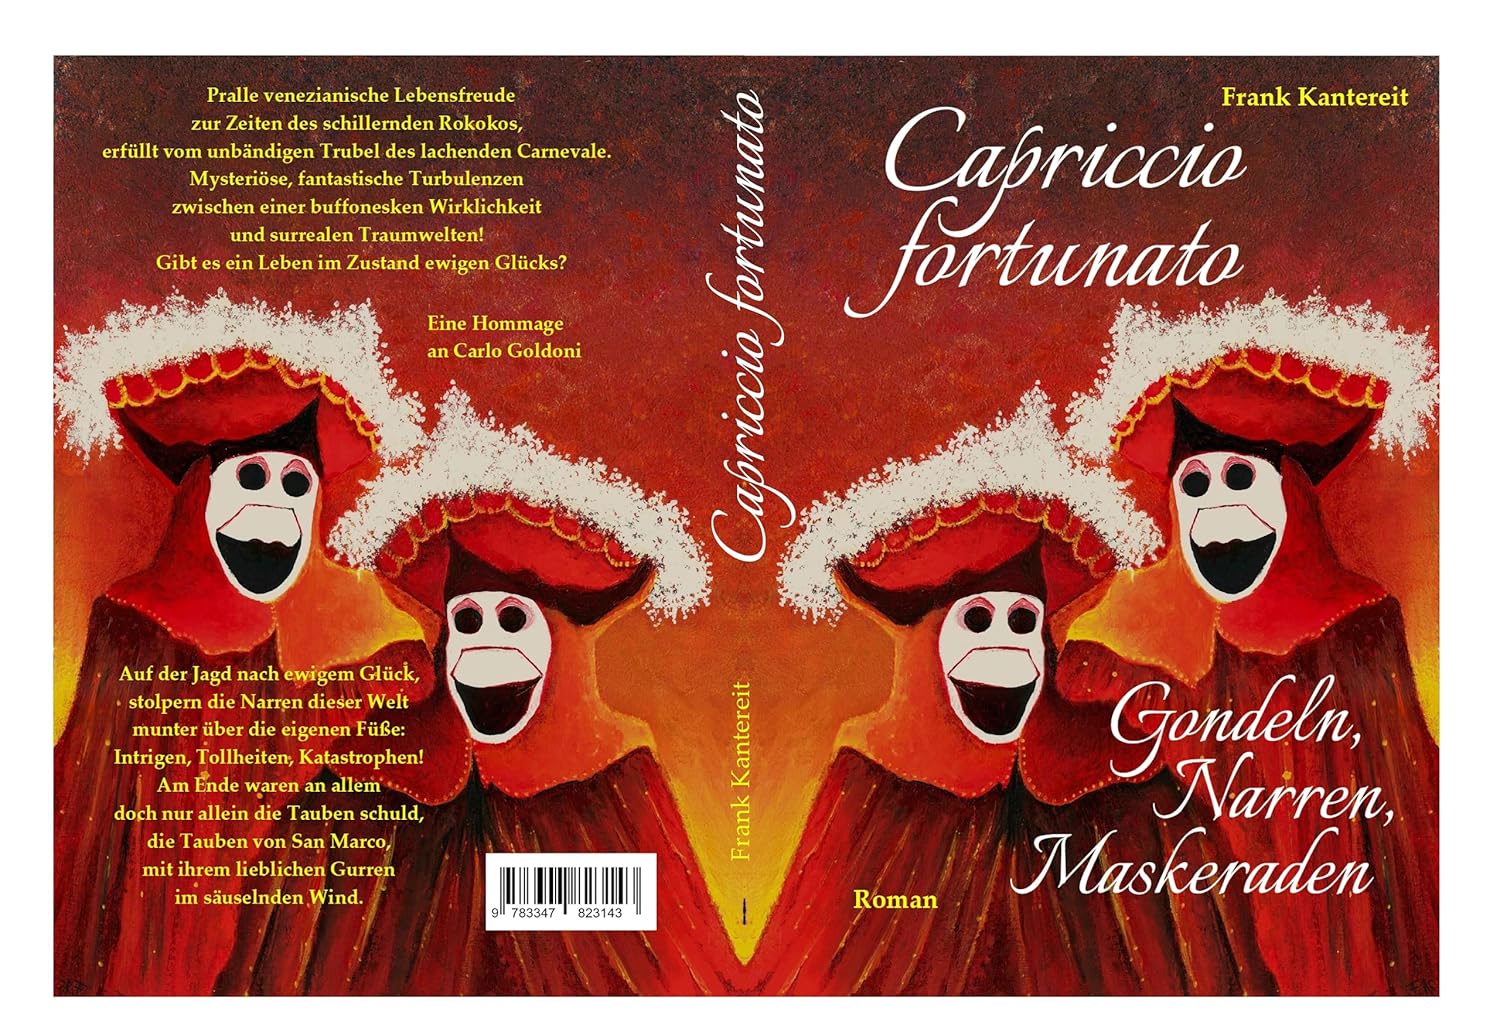 Capriccio fortunato - Gondeln, Narren, Maskeraden